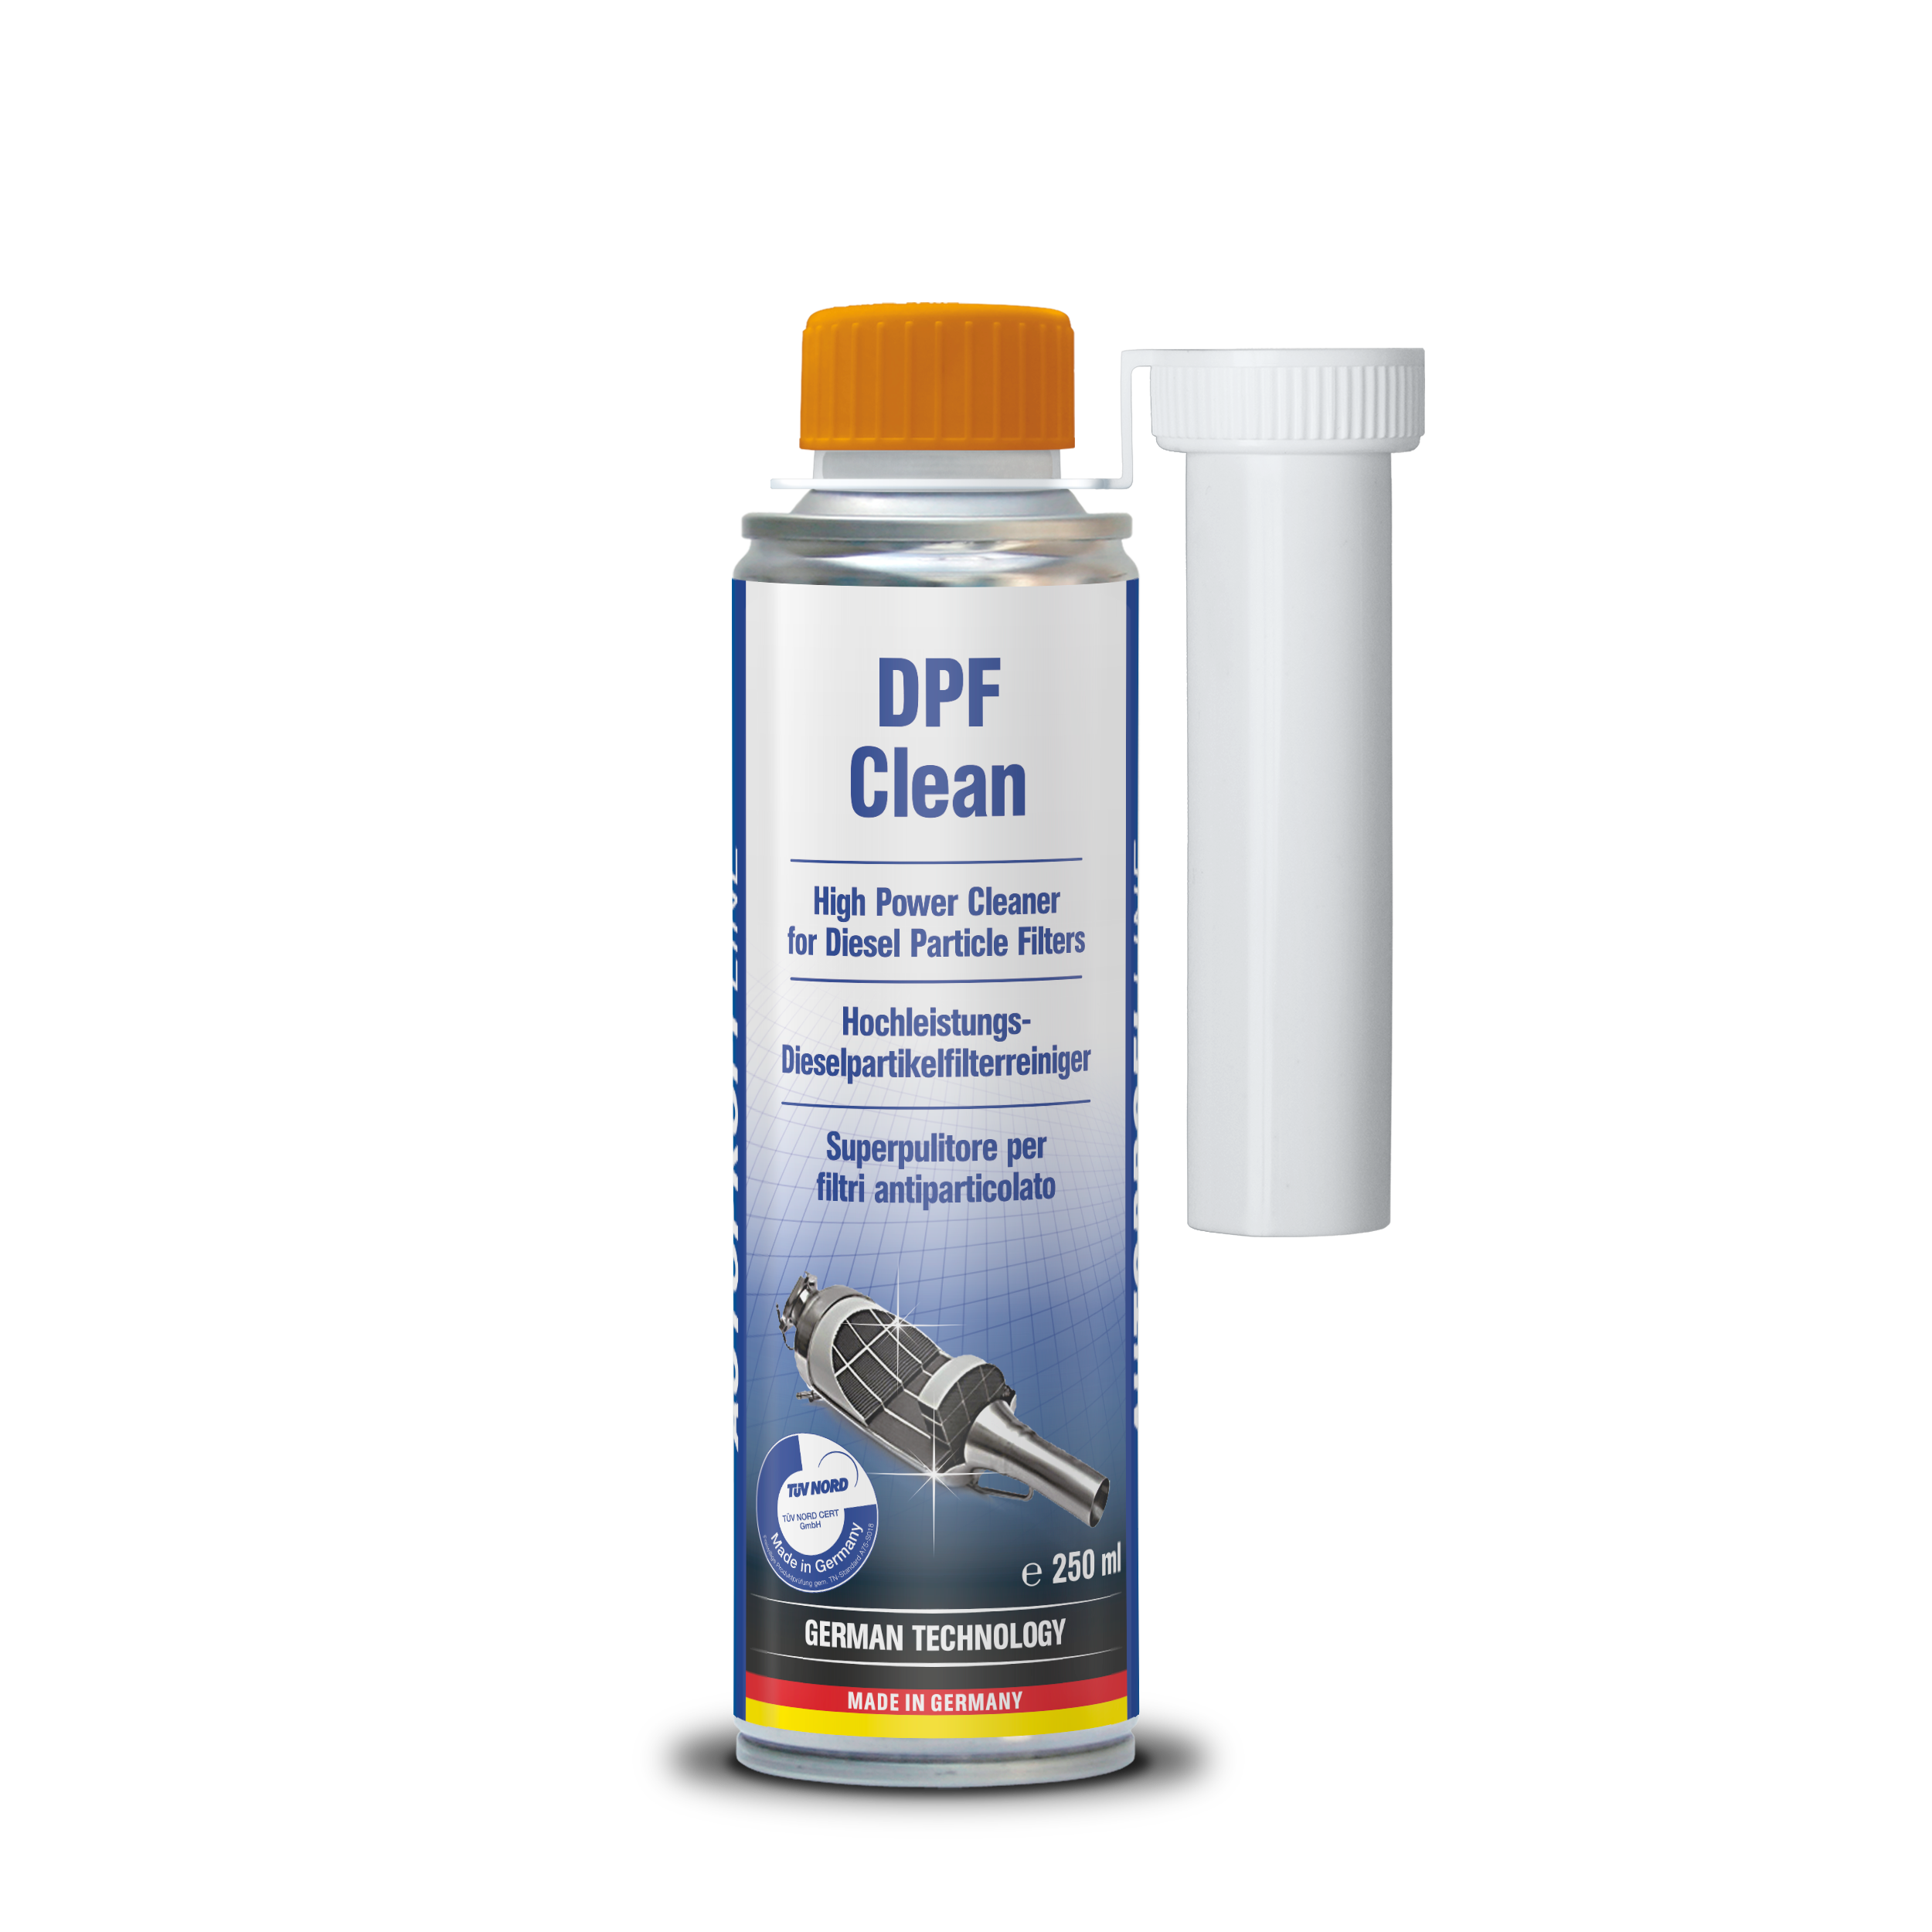 DPF Clean®Diesel DPF Exhaust Emissions Cleaner